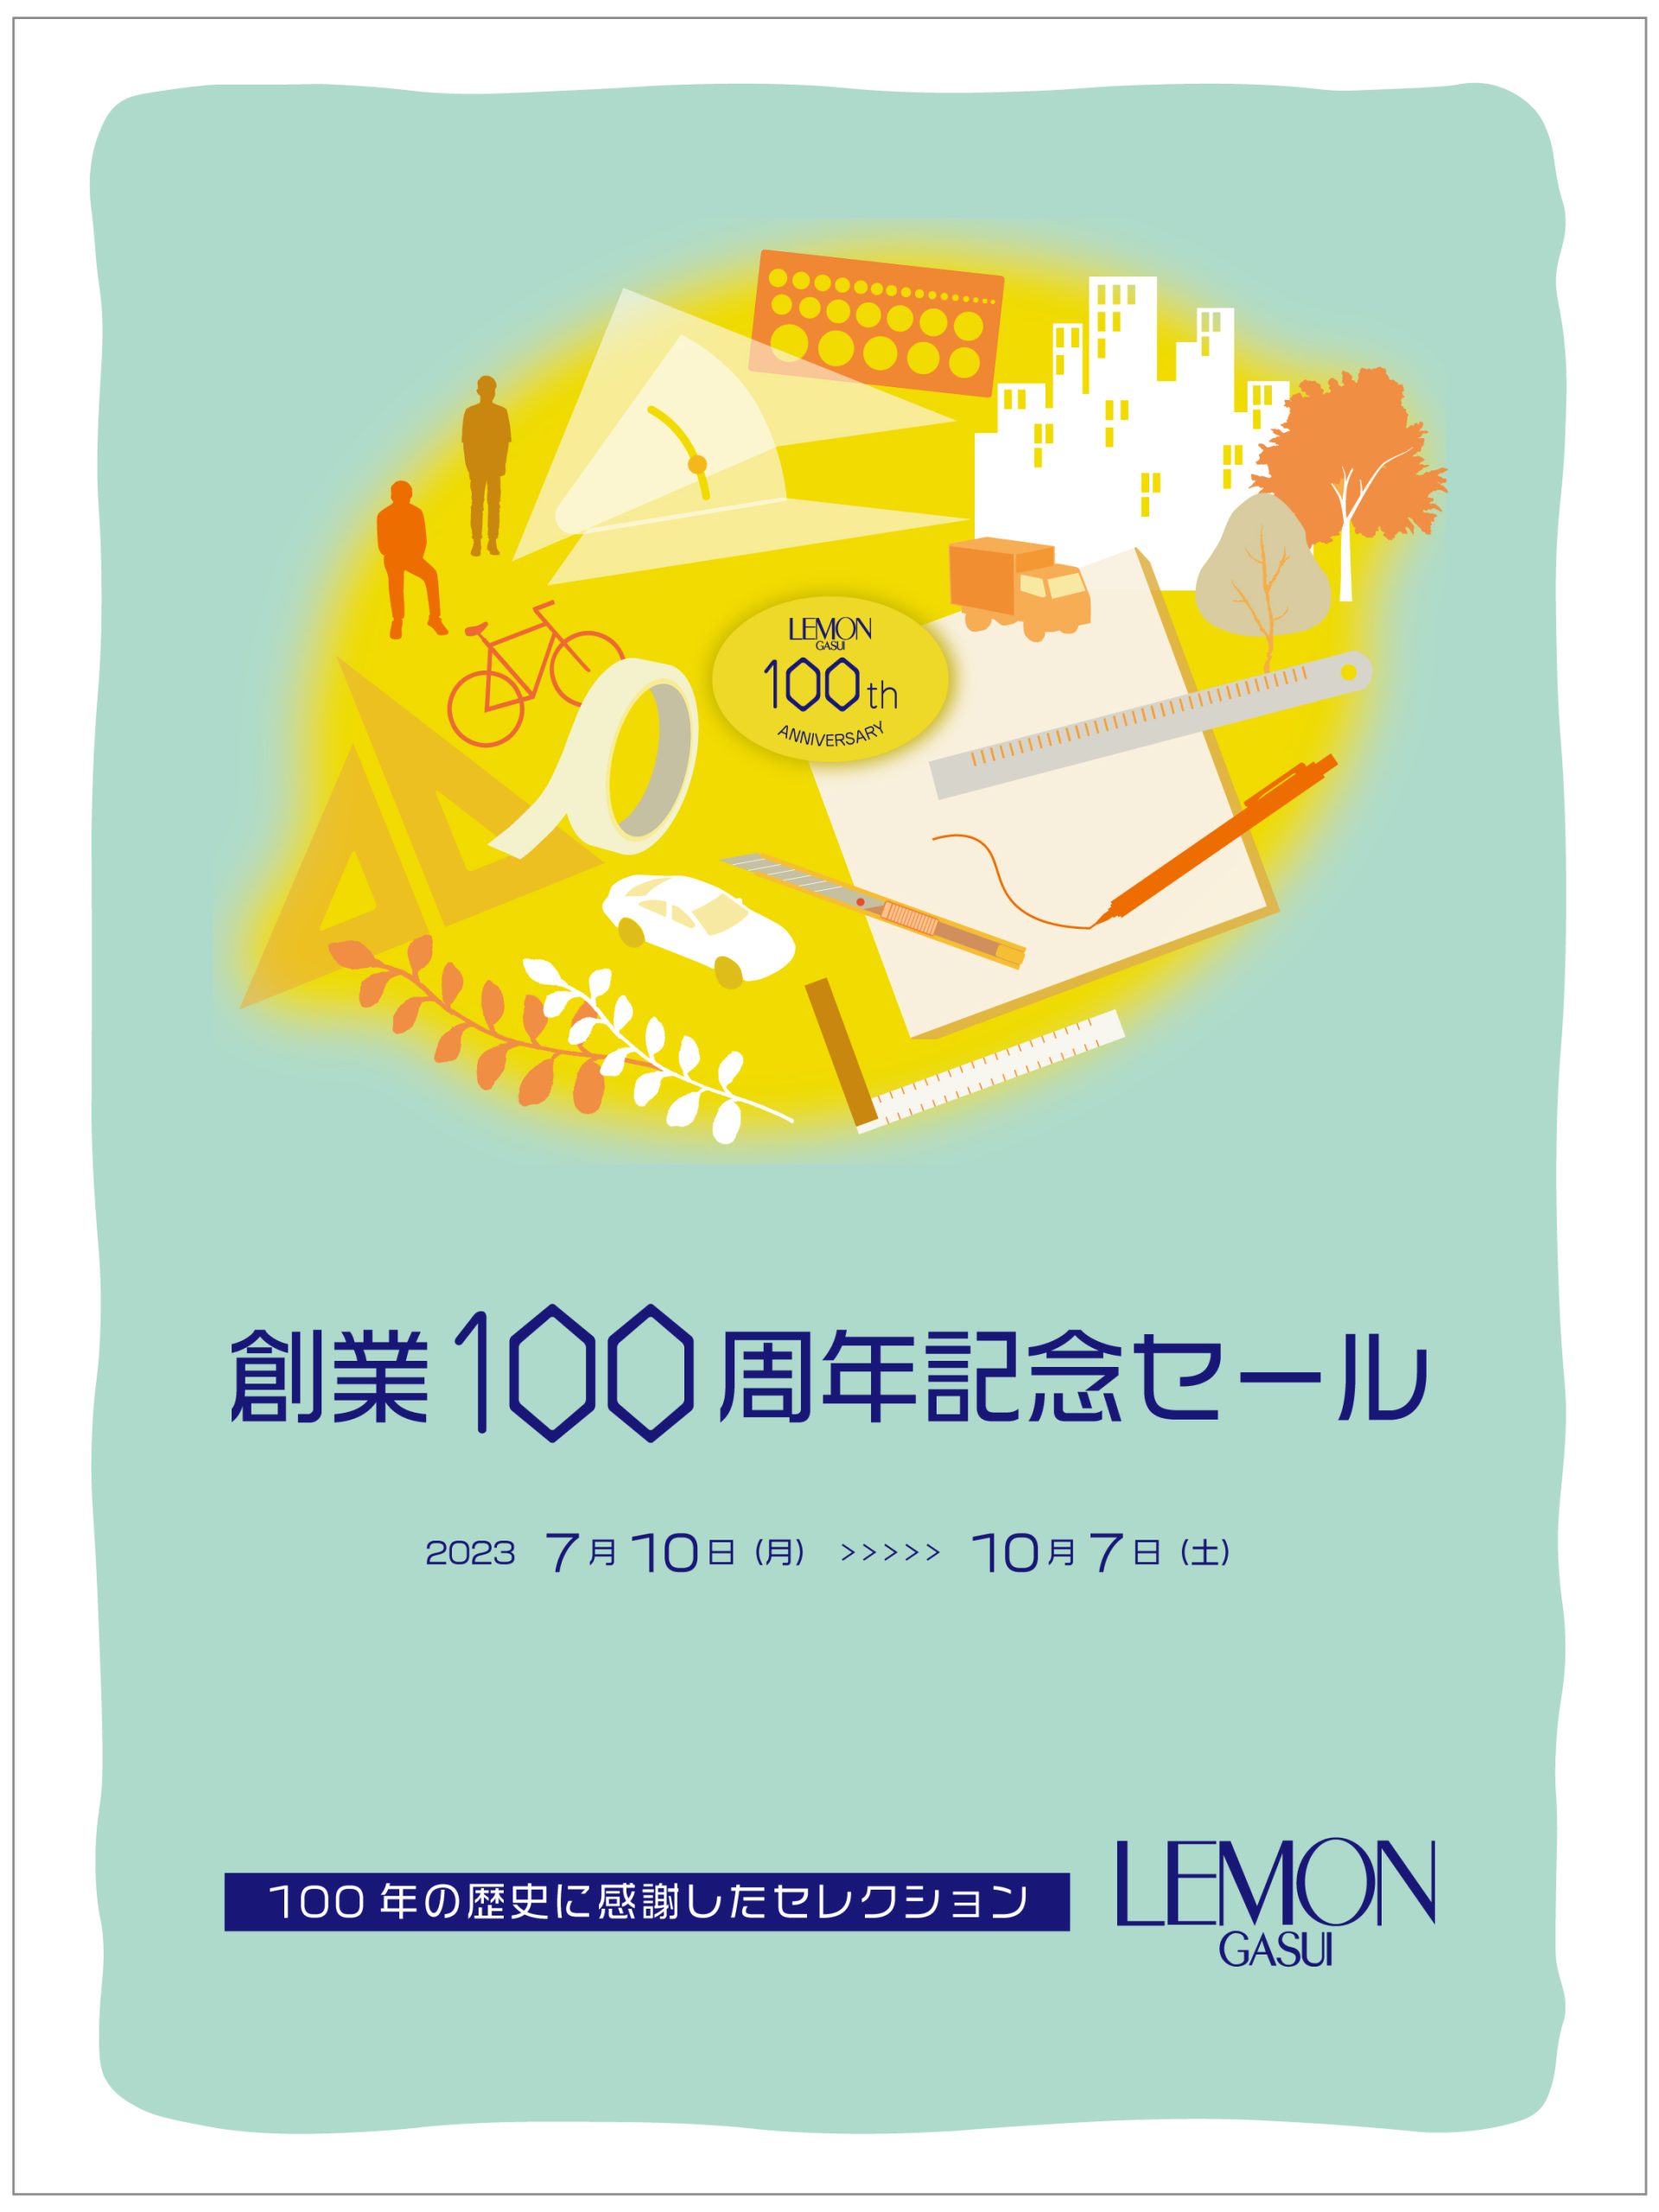 【 創業100周年記念セール 】対象商品公開！